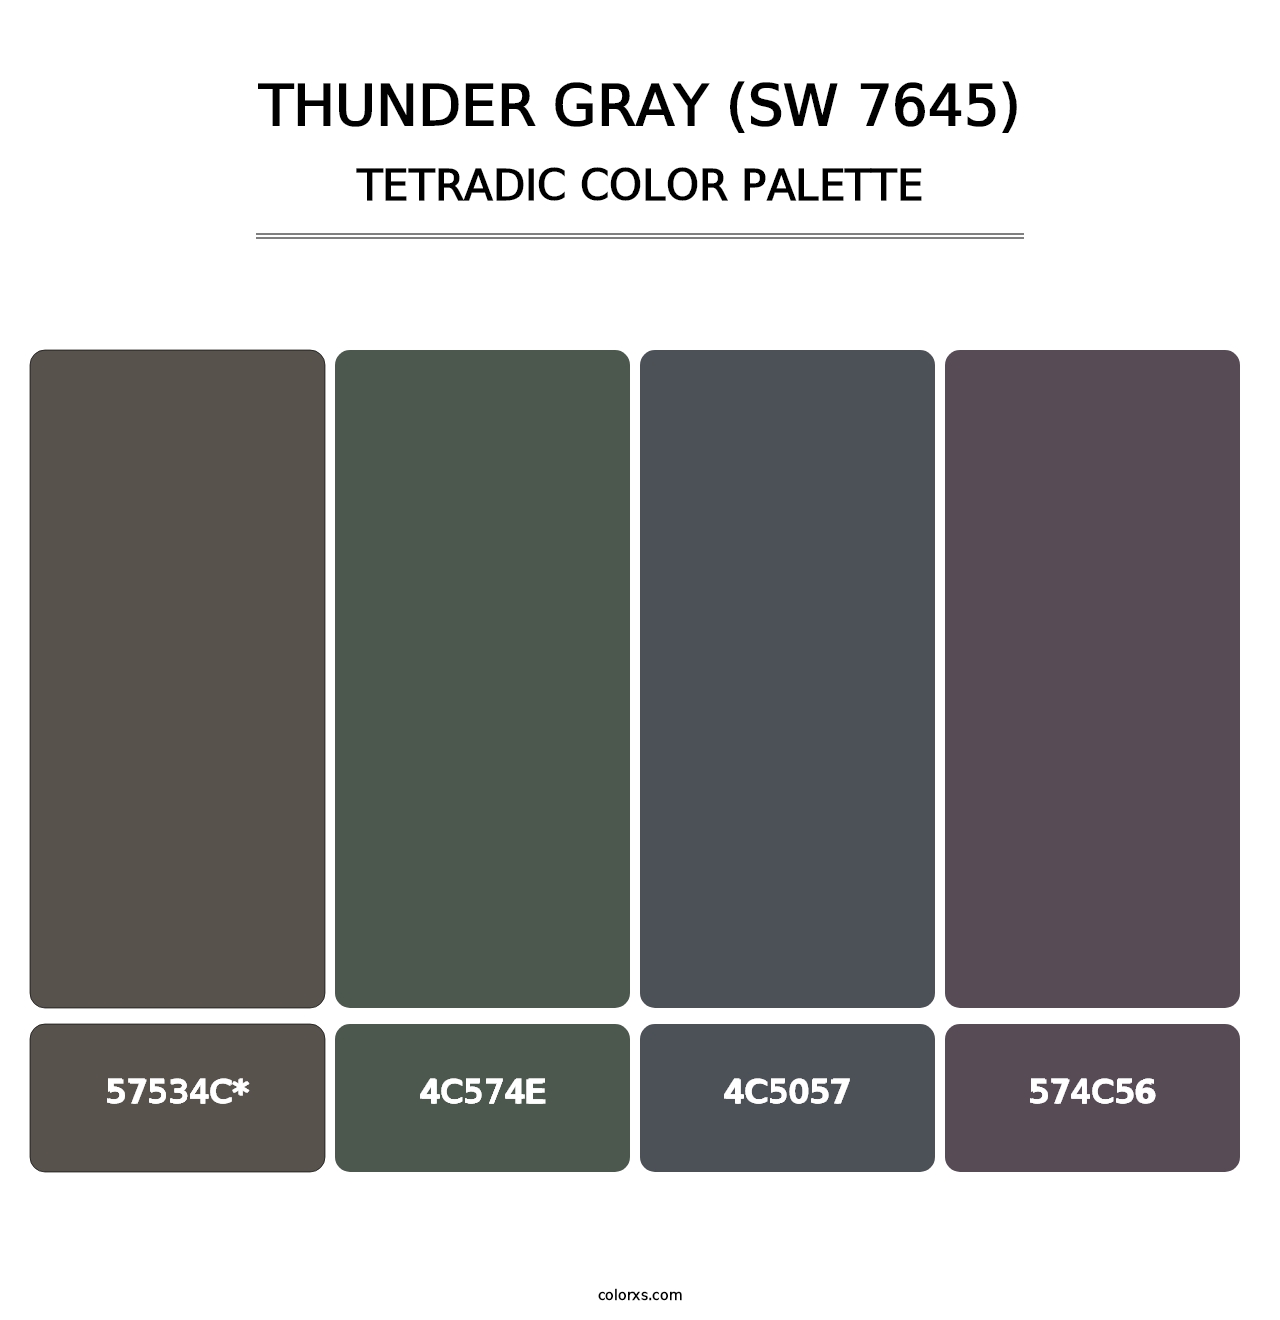 Thunder Gray (SW 7645) - Tetradic Color Palette